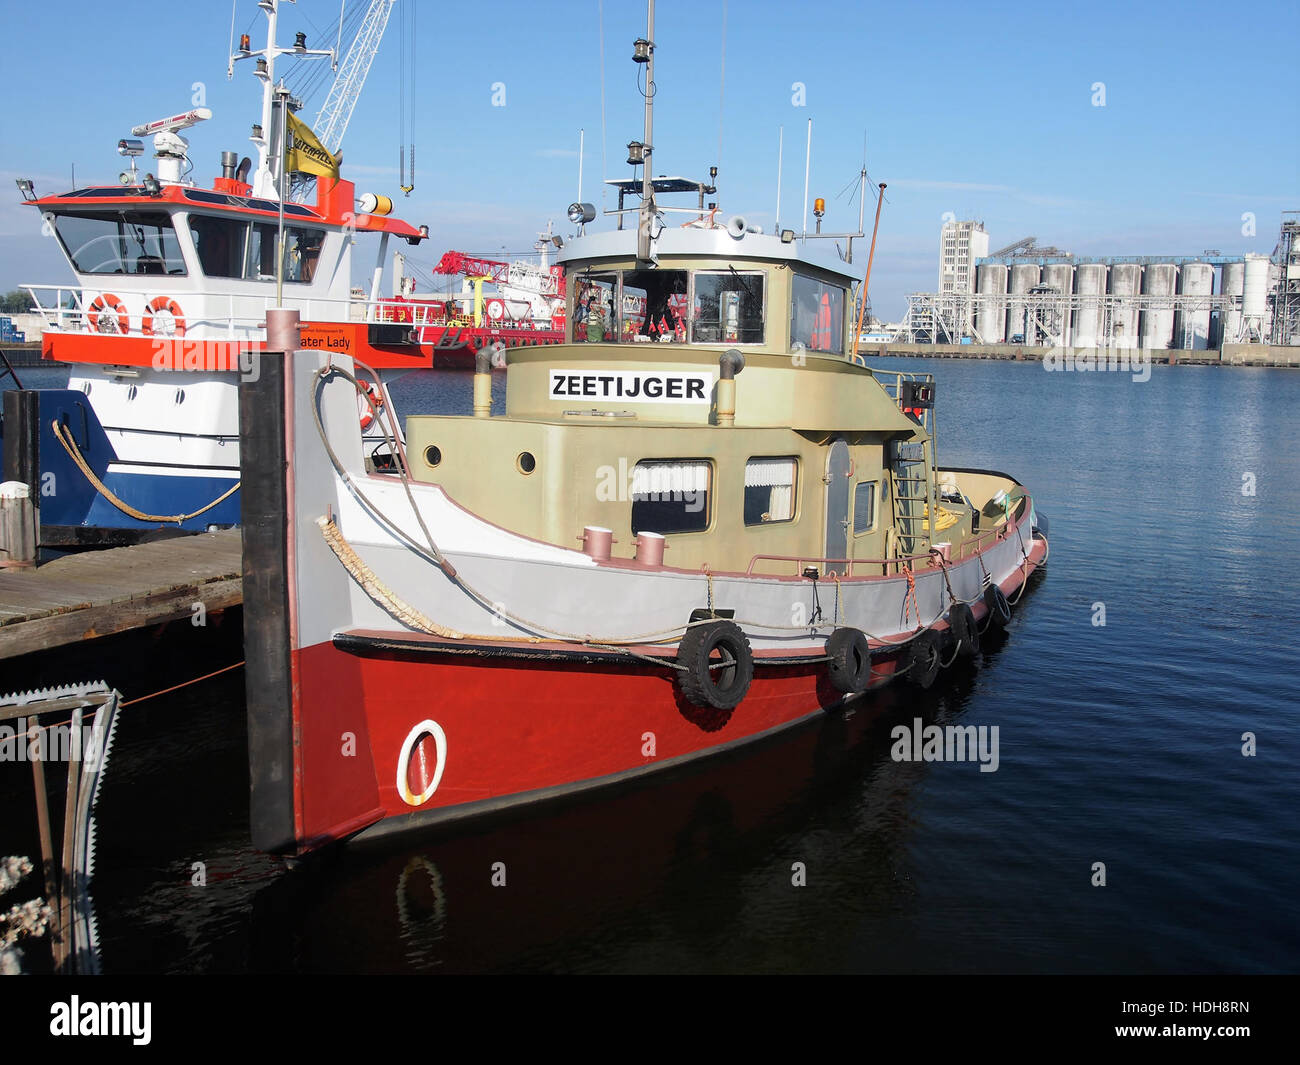 Zeetijger (Schiff, 1947) ENI 02002245 Hafen von Amsterdam pic3 Stockfoto